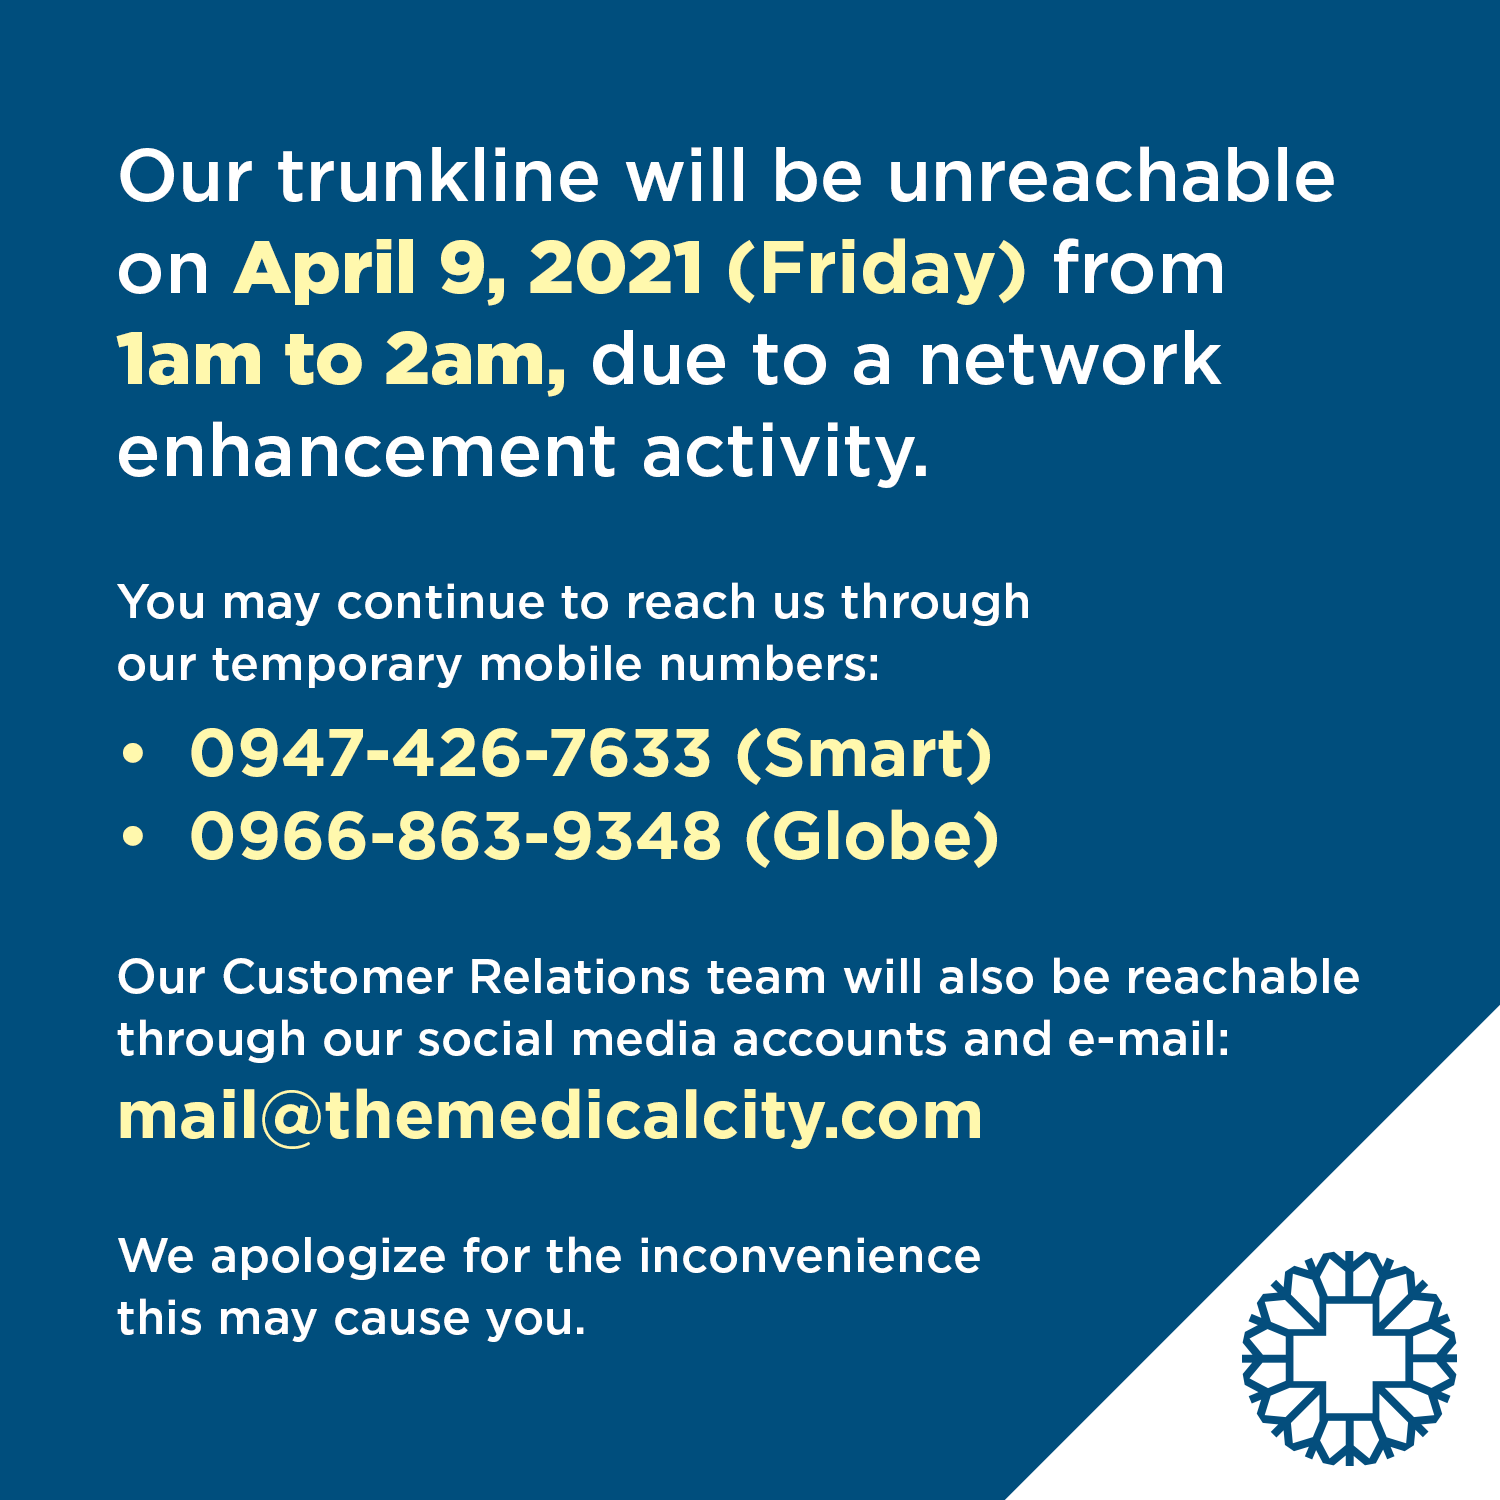 announcement regarding tmcs unreachable trunkline on april 9, 2021